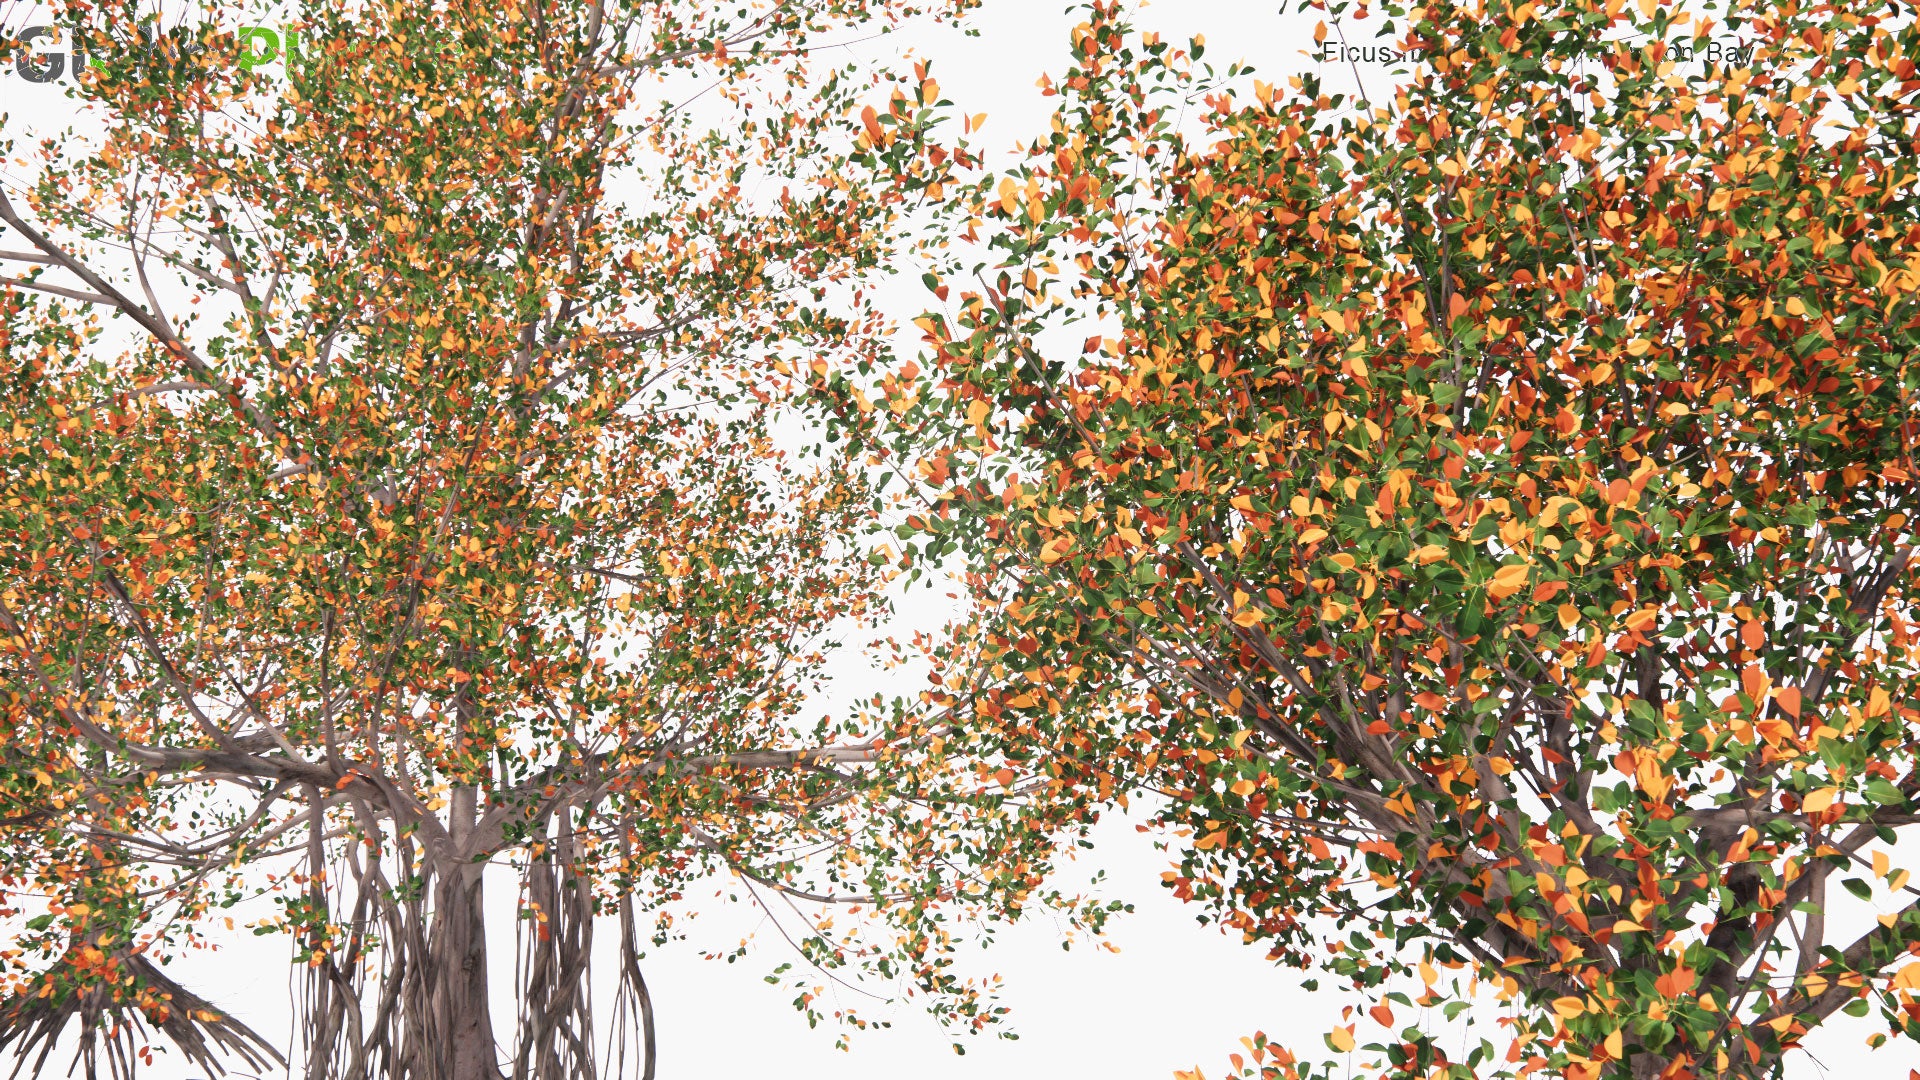 Low Poly Ficus Macrophylla - Moreton Bay Fig (3D Model)